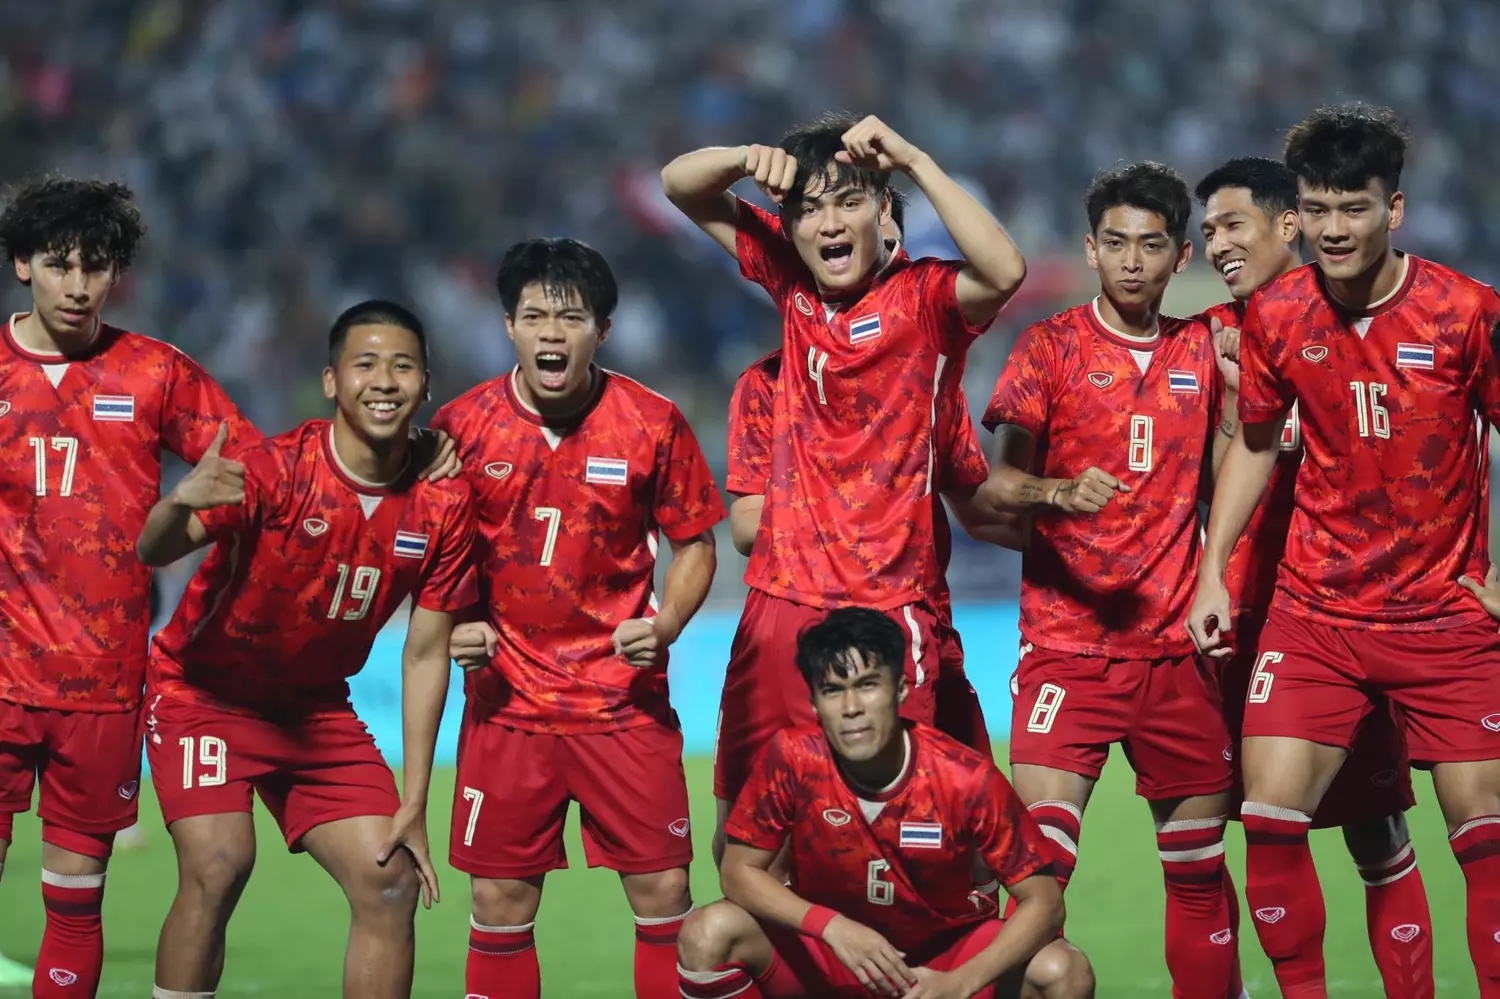 HLV Polking: 'U23 Thái Lan không sợ ai, kể cả U23 Việt Nam' - Bóng Đá